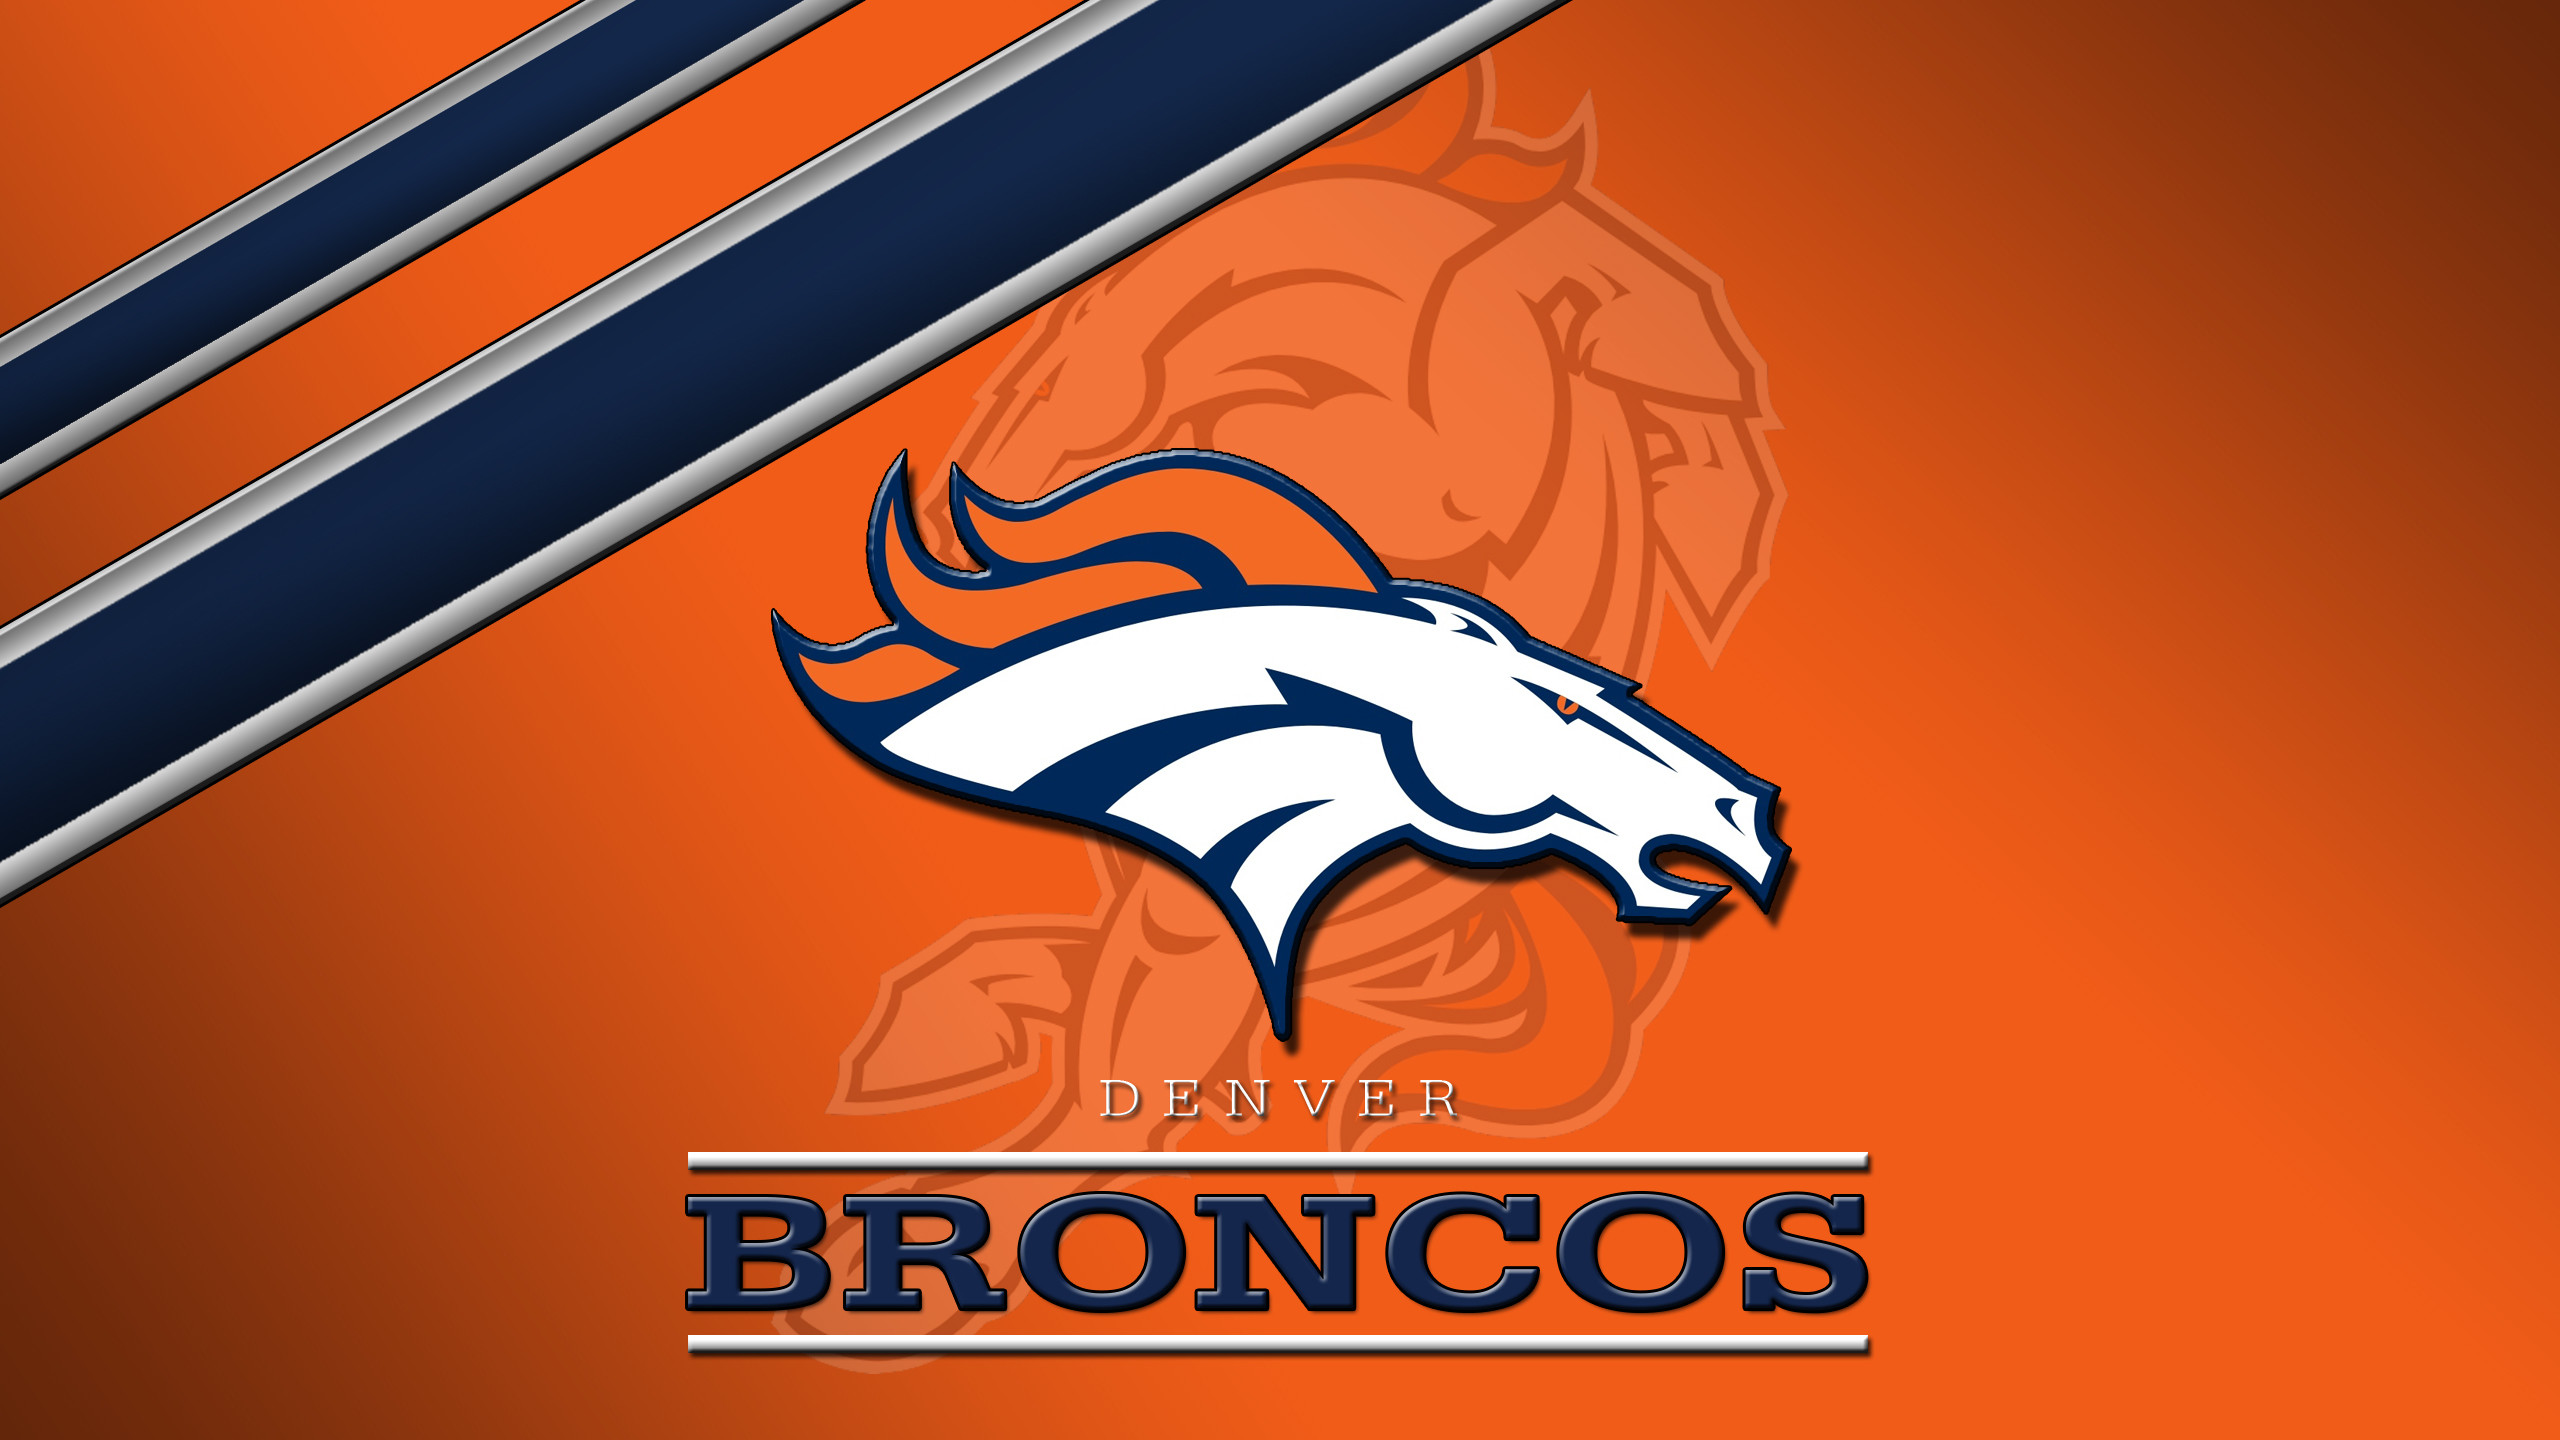 Denver Broncos Pictures Wallpaper Image